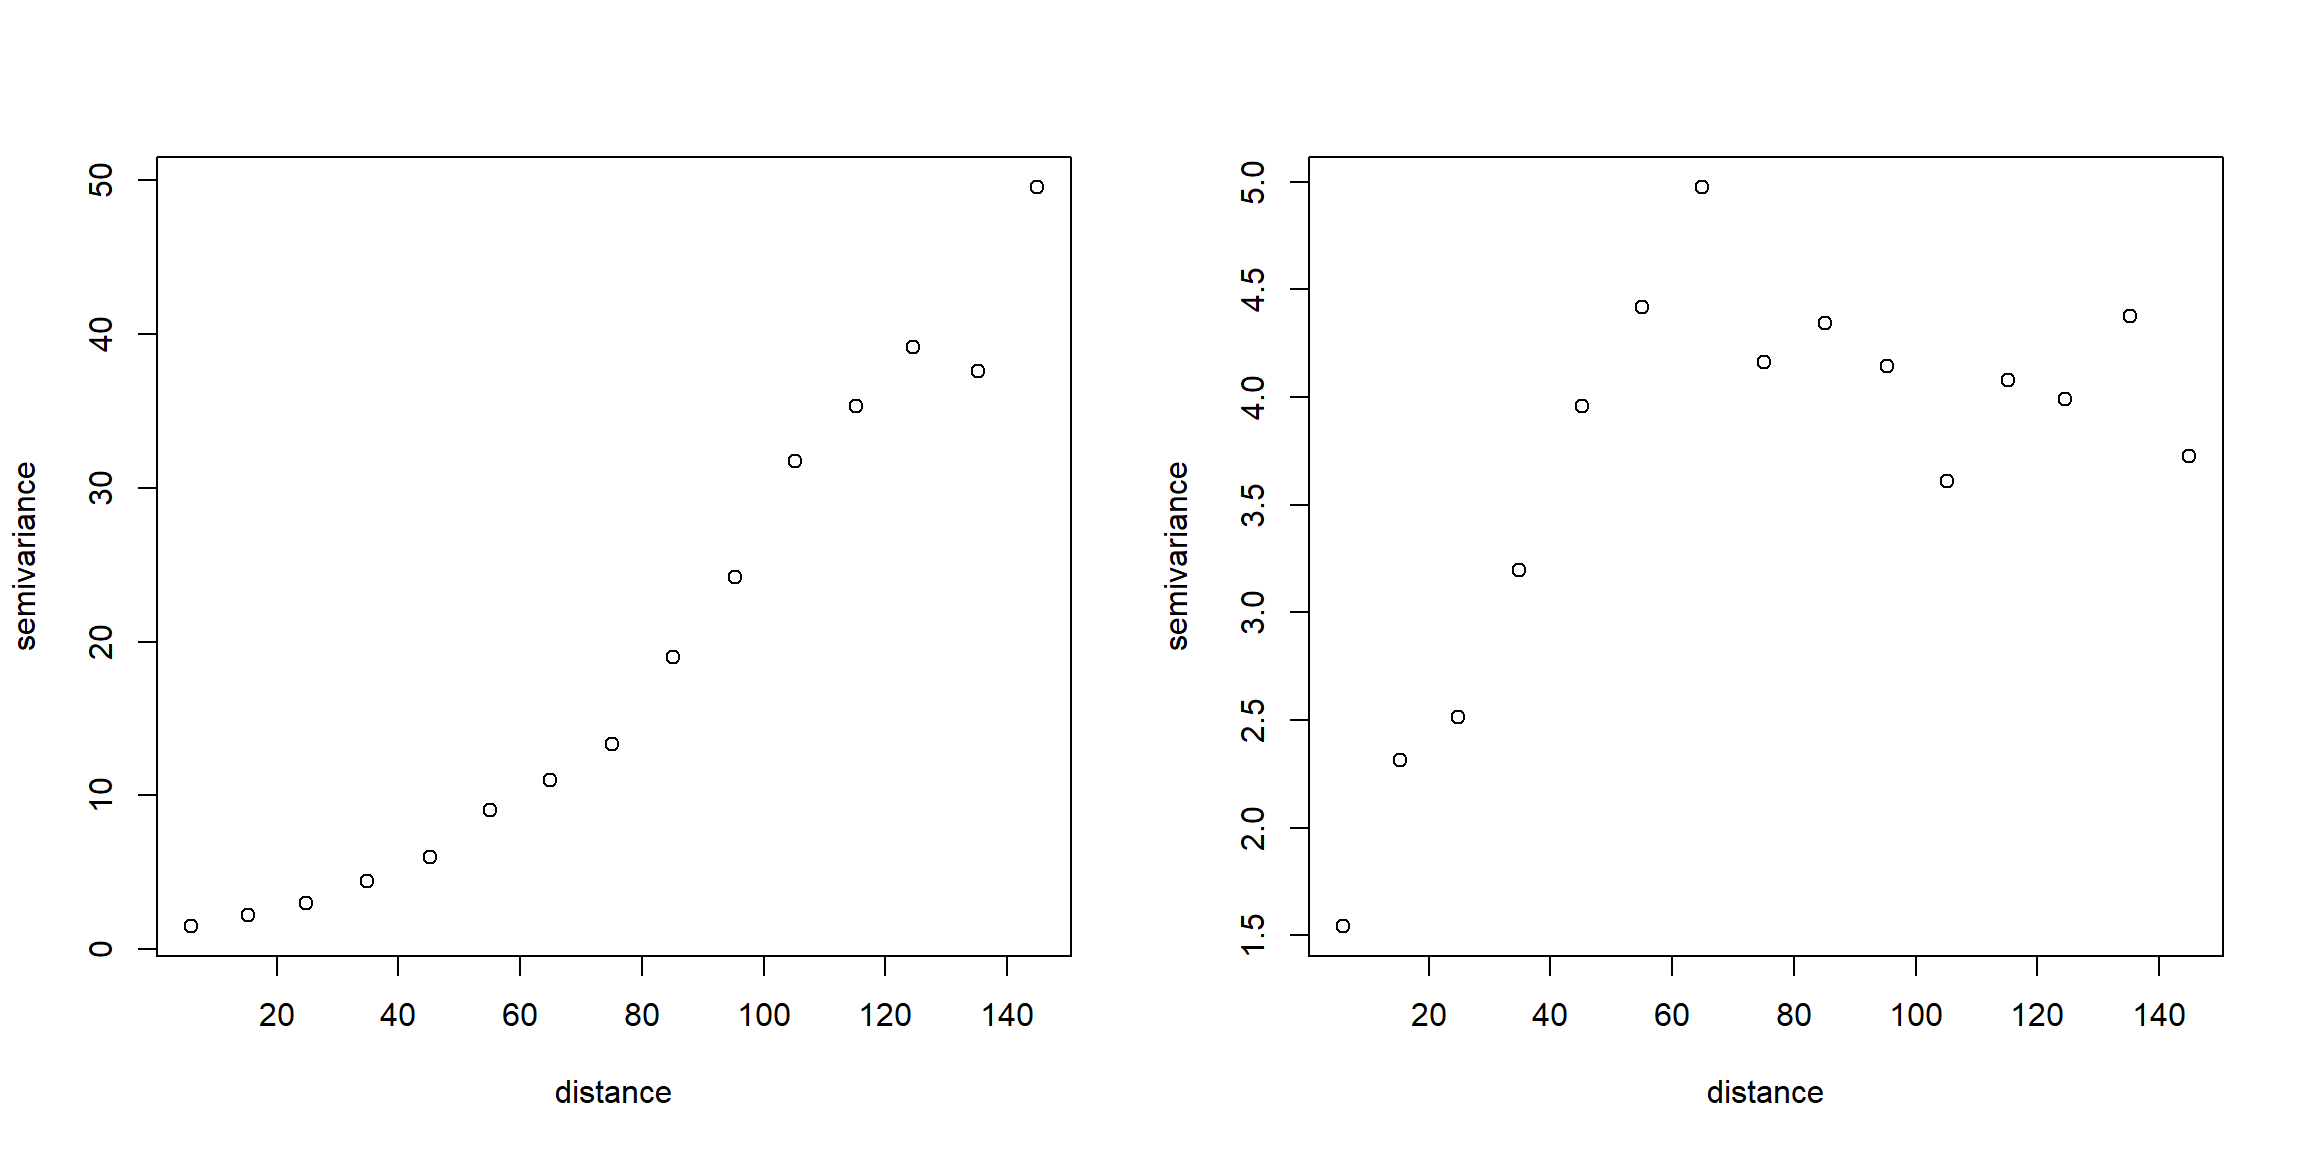 Semivariograma empírico obtenido asumiendo media constante (izquierda) y a partir de los residuos de un ajuste lineal de la tendencia (derecha), empleando los datos del acuífero Wolfcamp.